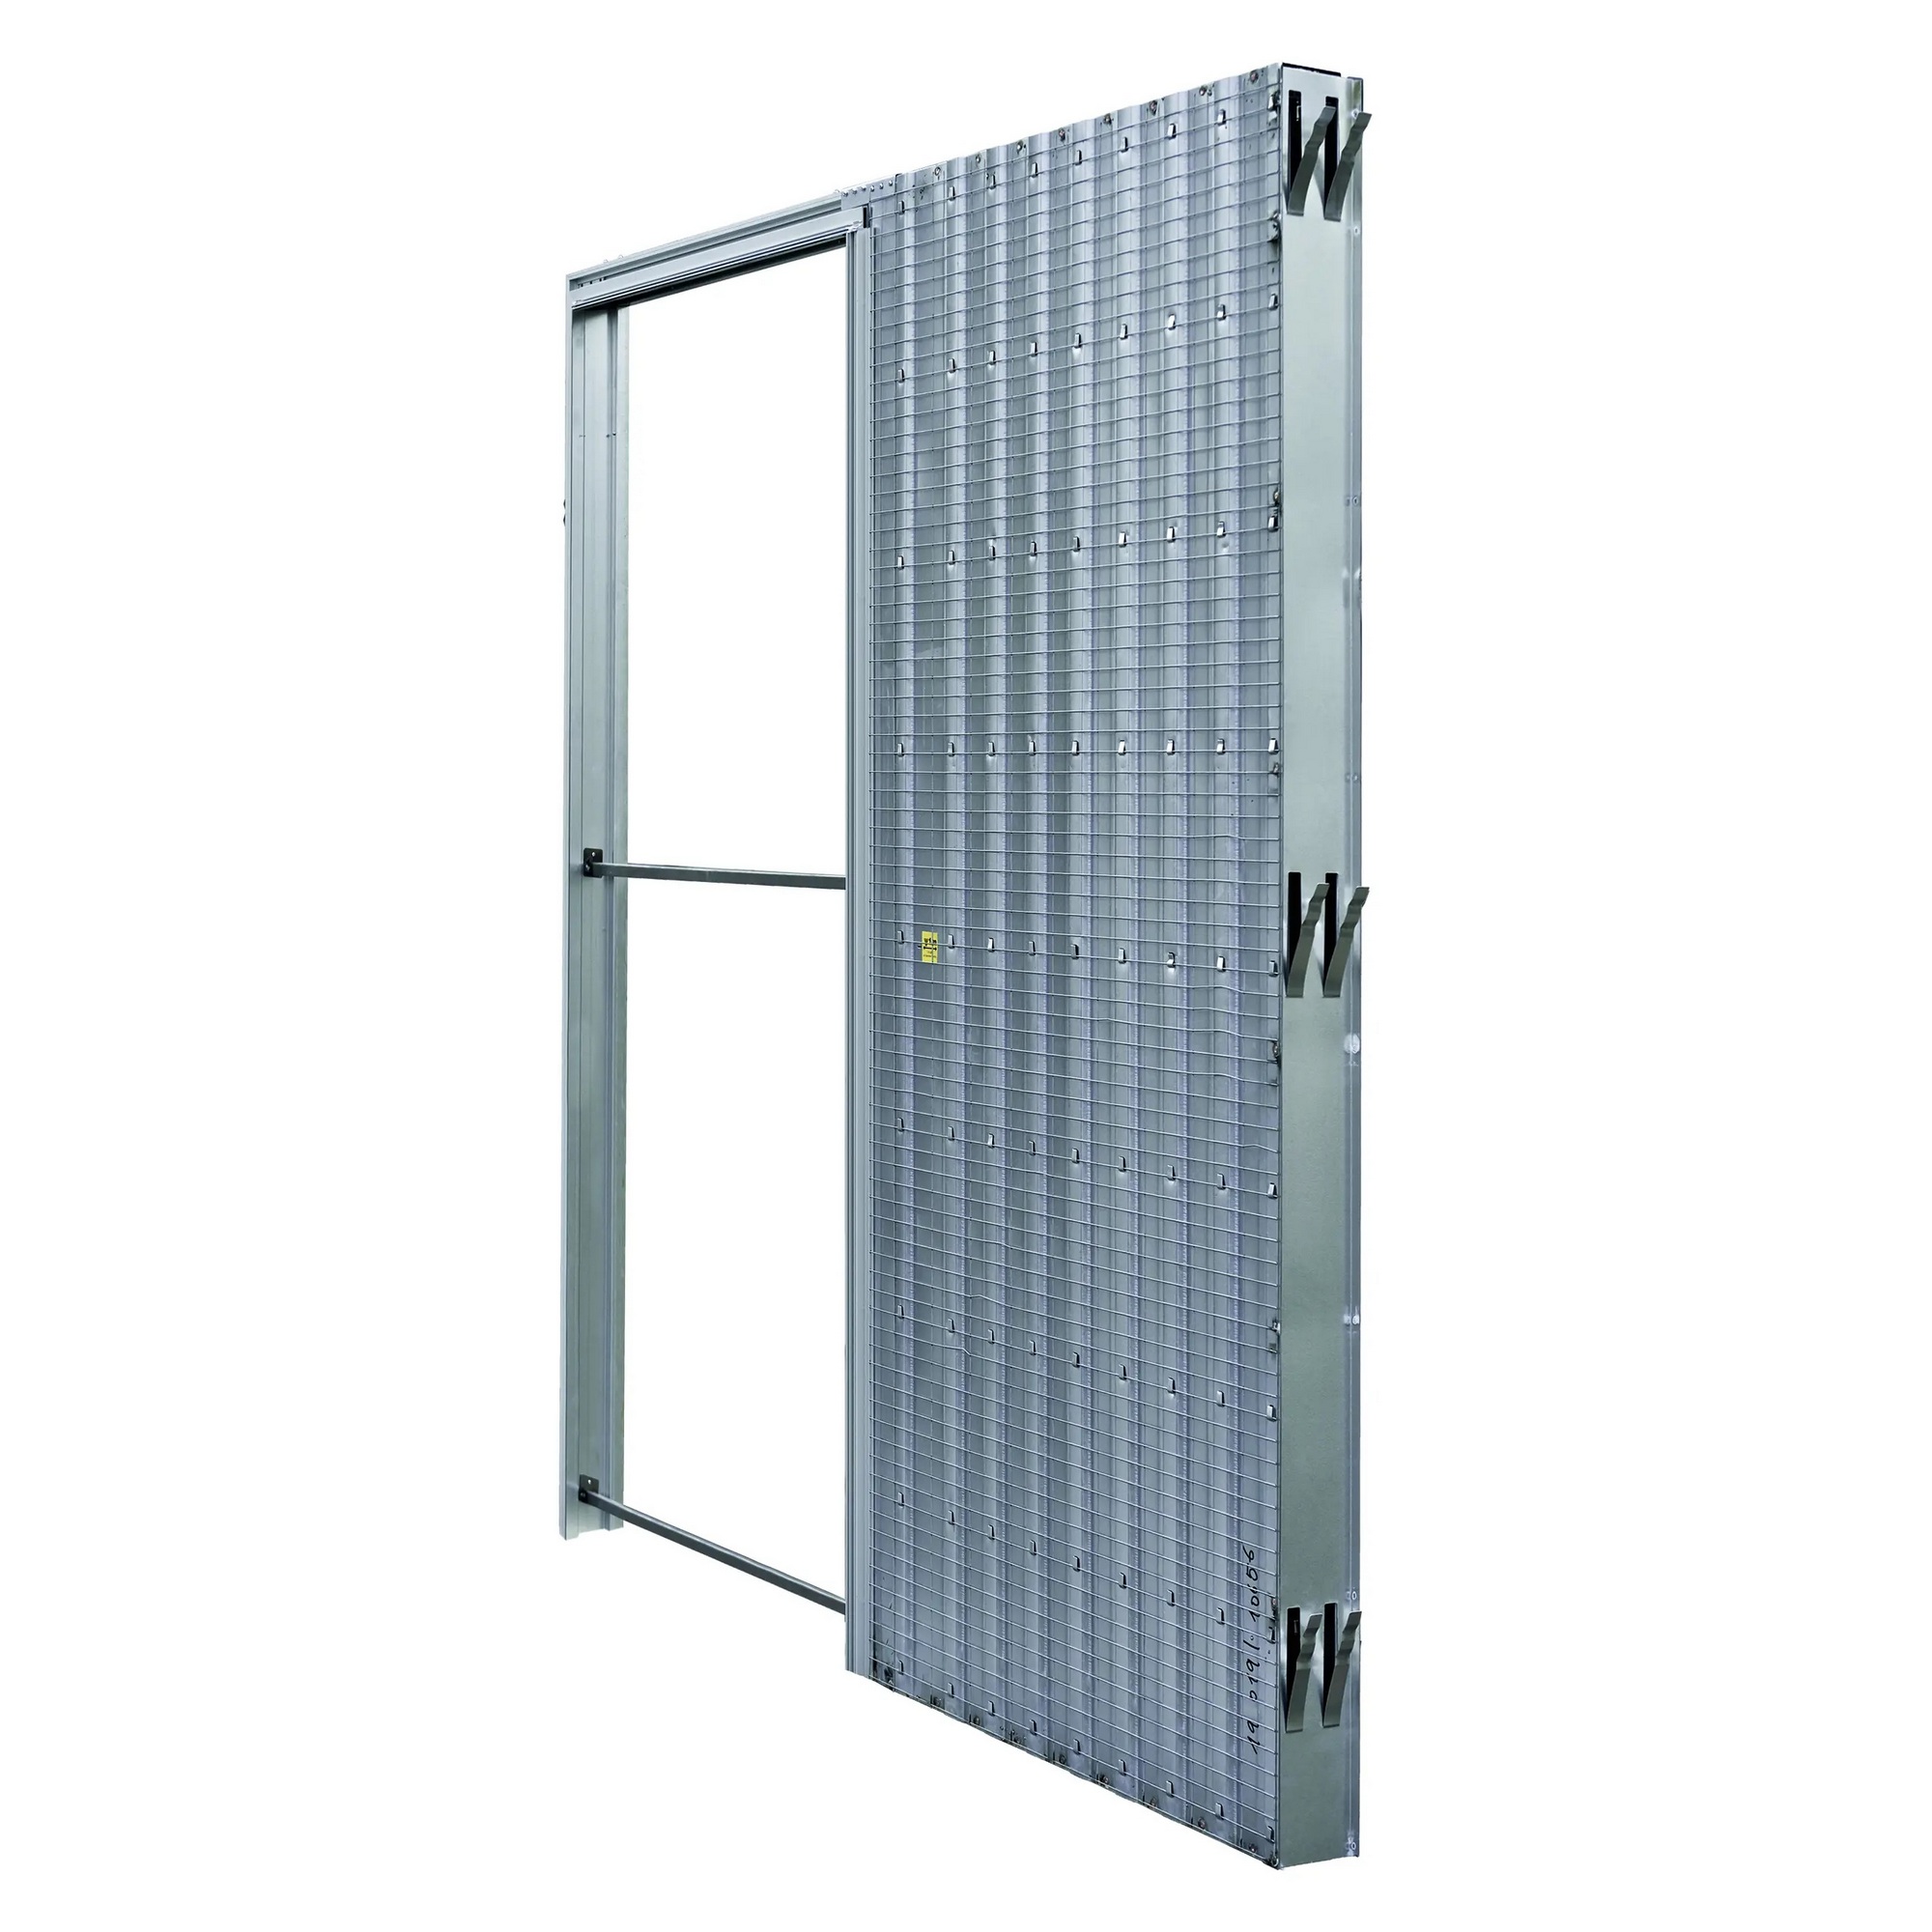 Pouzdro pro posuvné dveře JAP AKTIVE standard 1200 mm do zdiva JAP